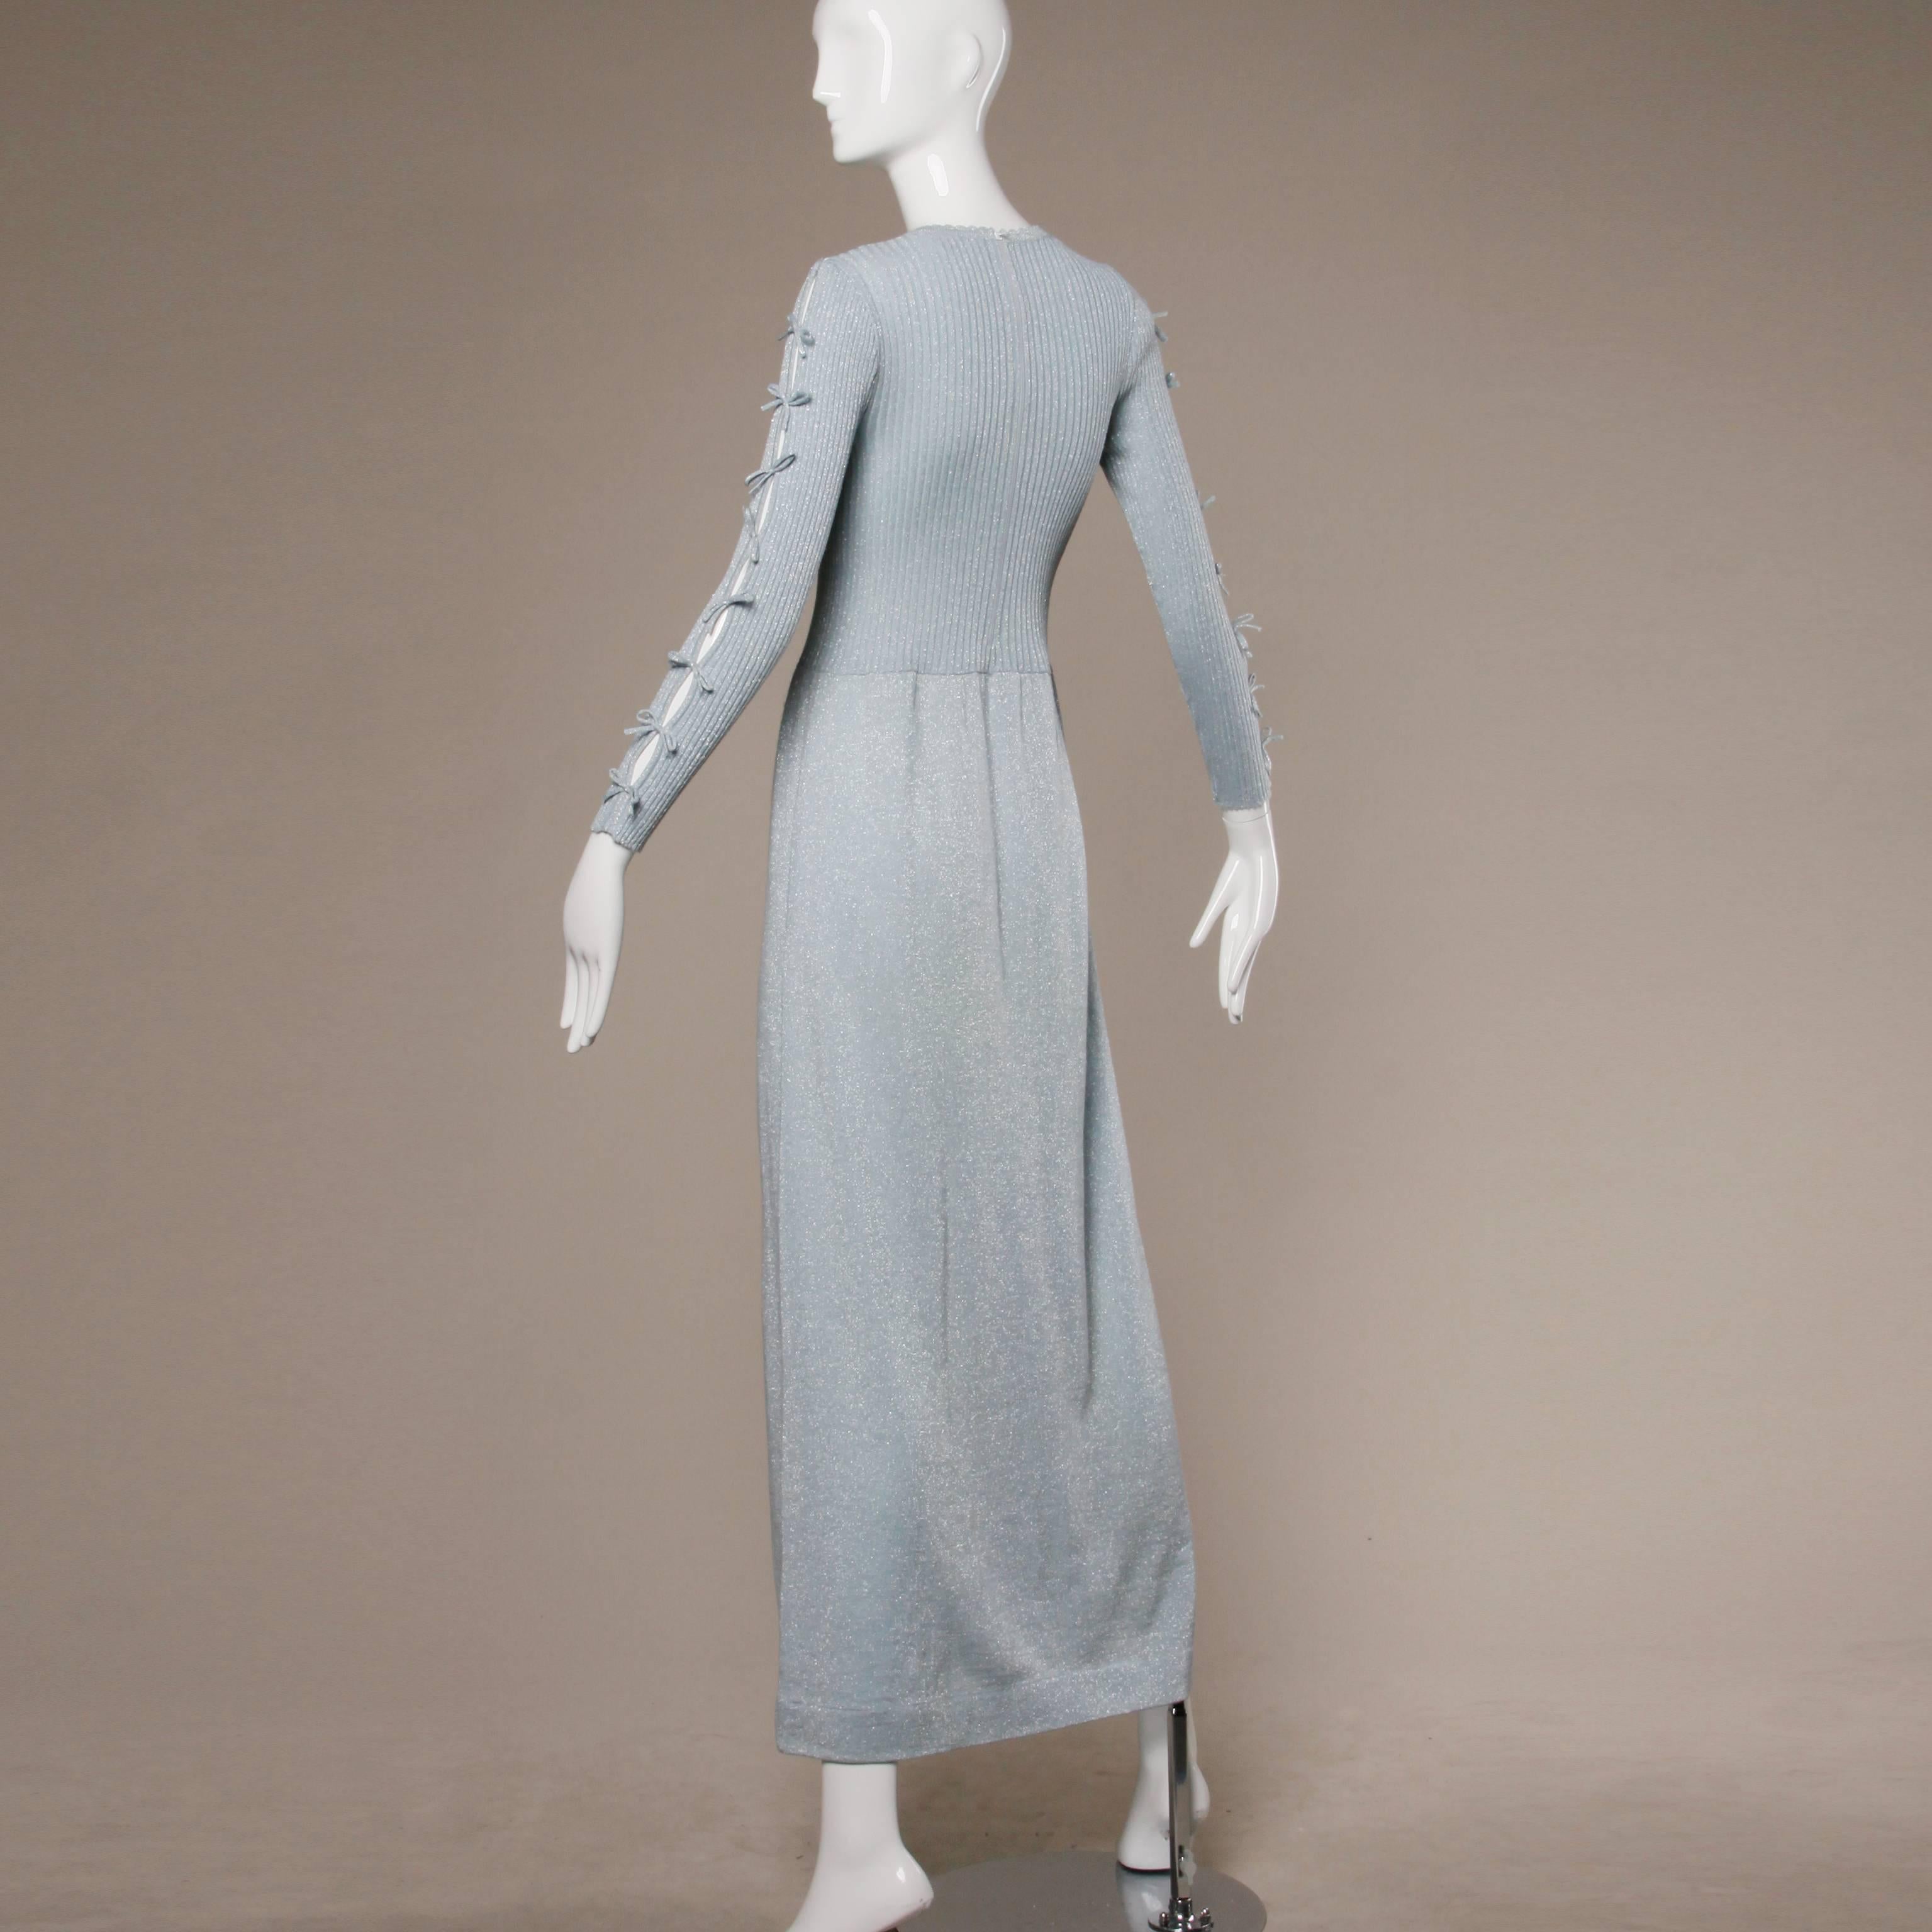 Women's 1960s Banff Ltd. by Gianni Ferri Italian Wool Metallic Ice Blue Knit Maxi Dress